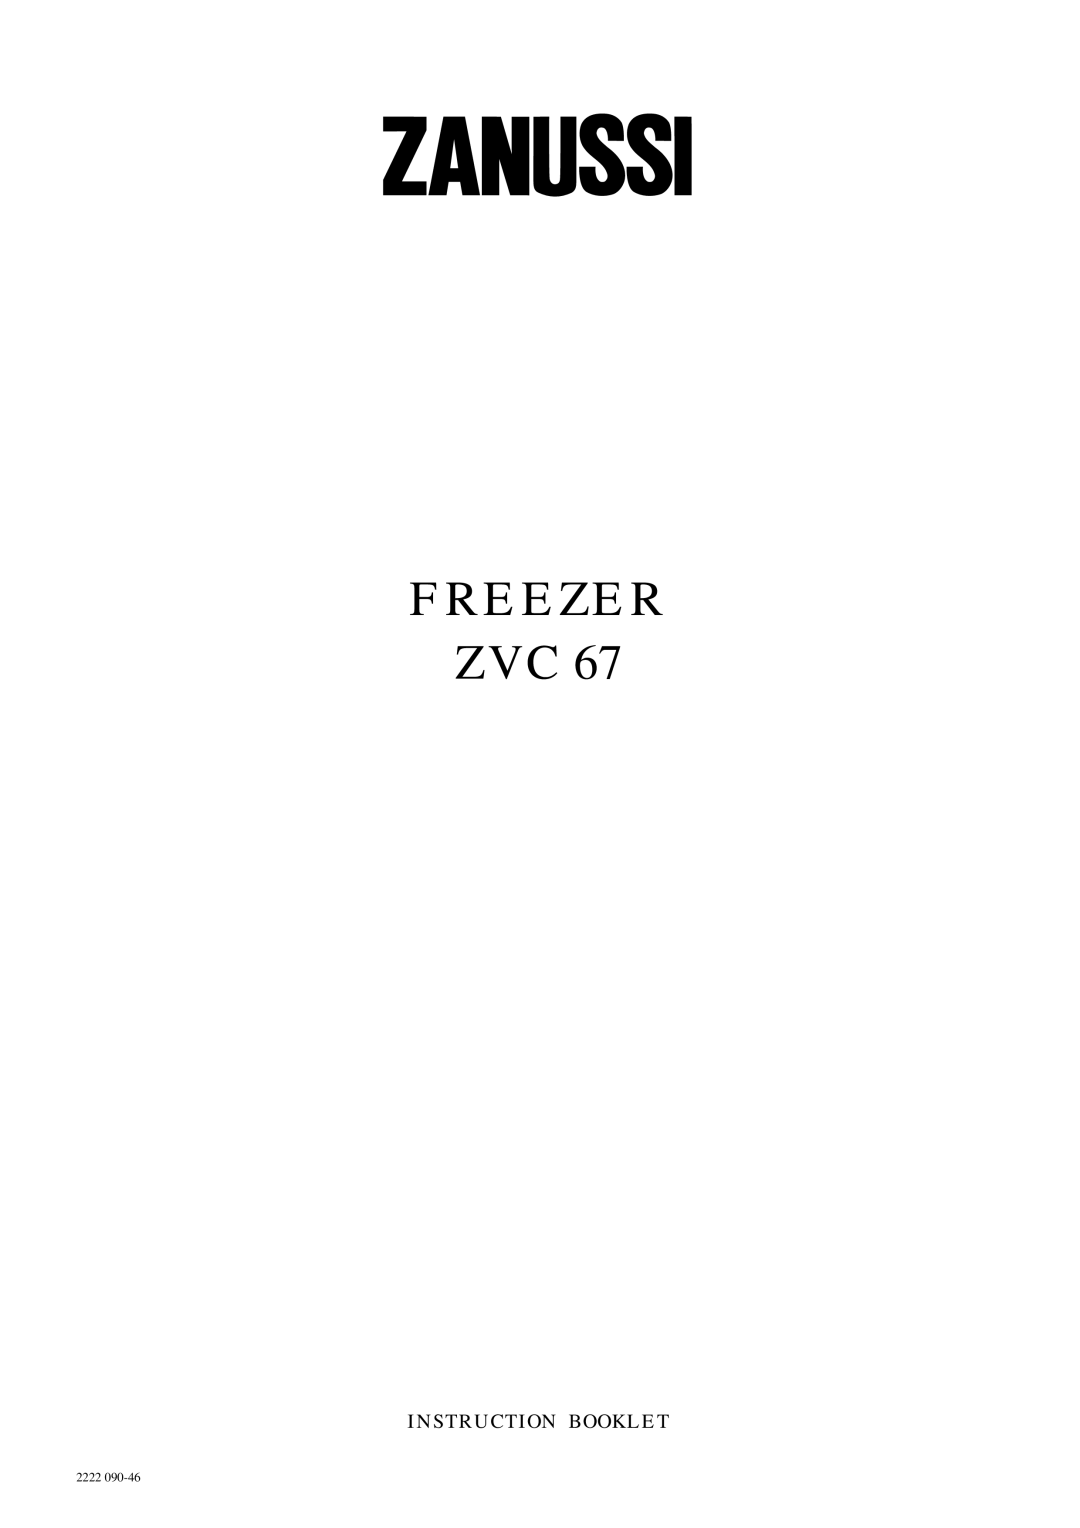 Zanussi ZVC 67 manual Freezer Zvc, Instruction Booklet, 2222 